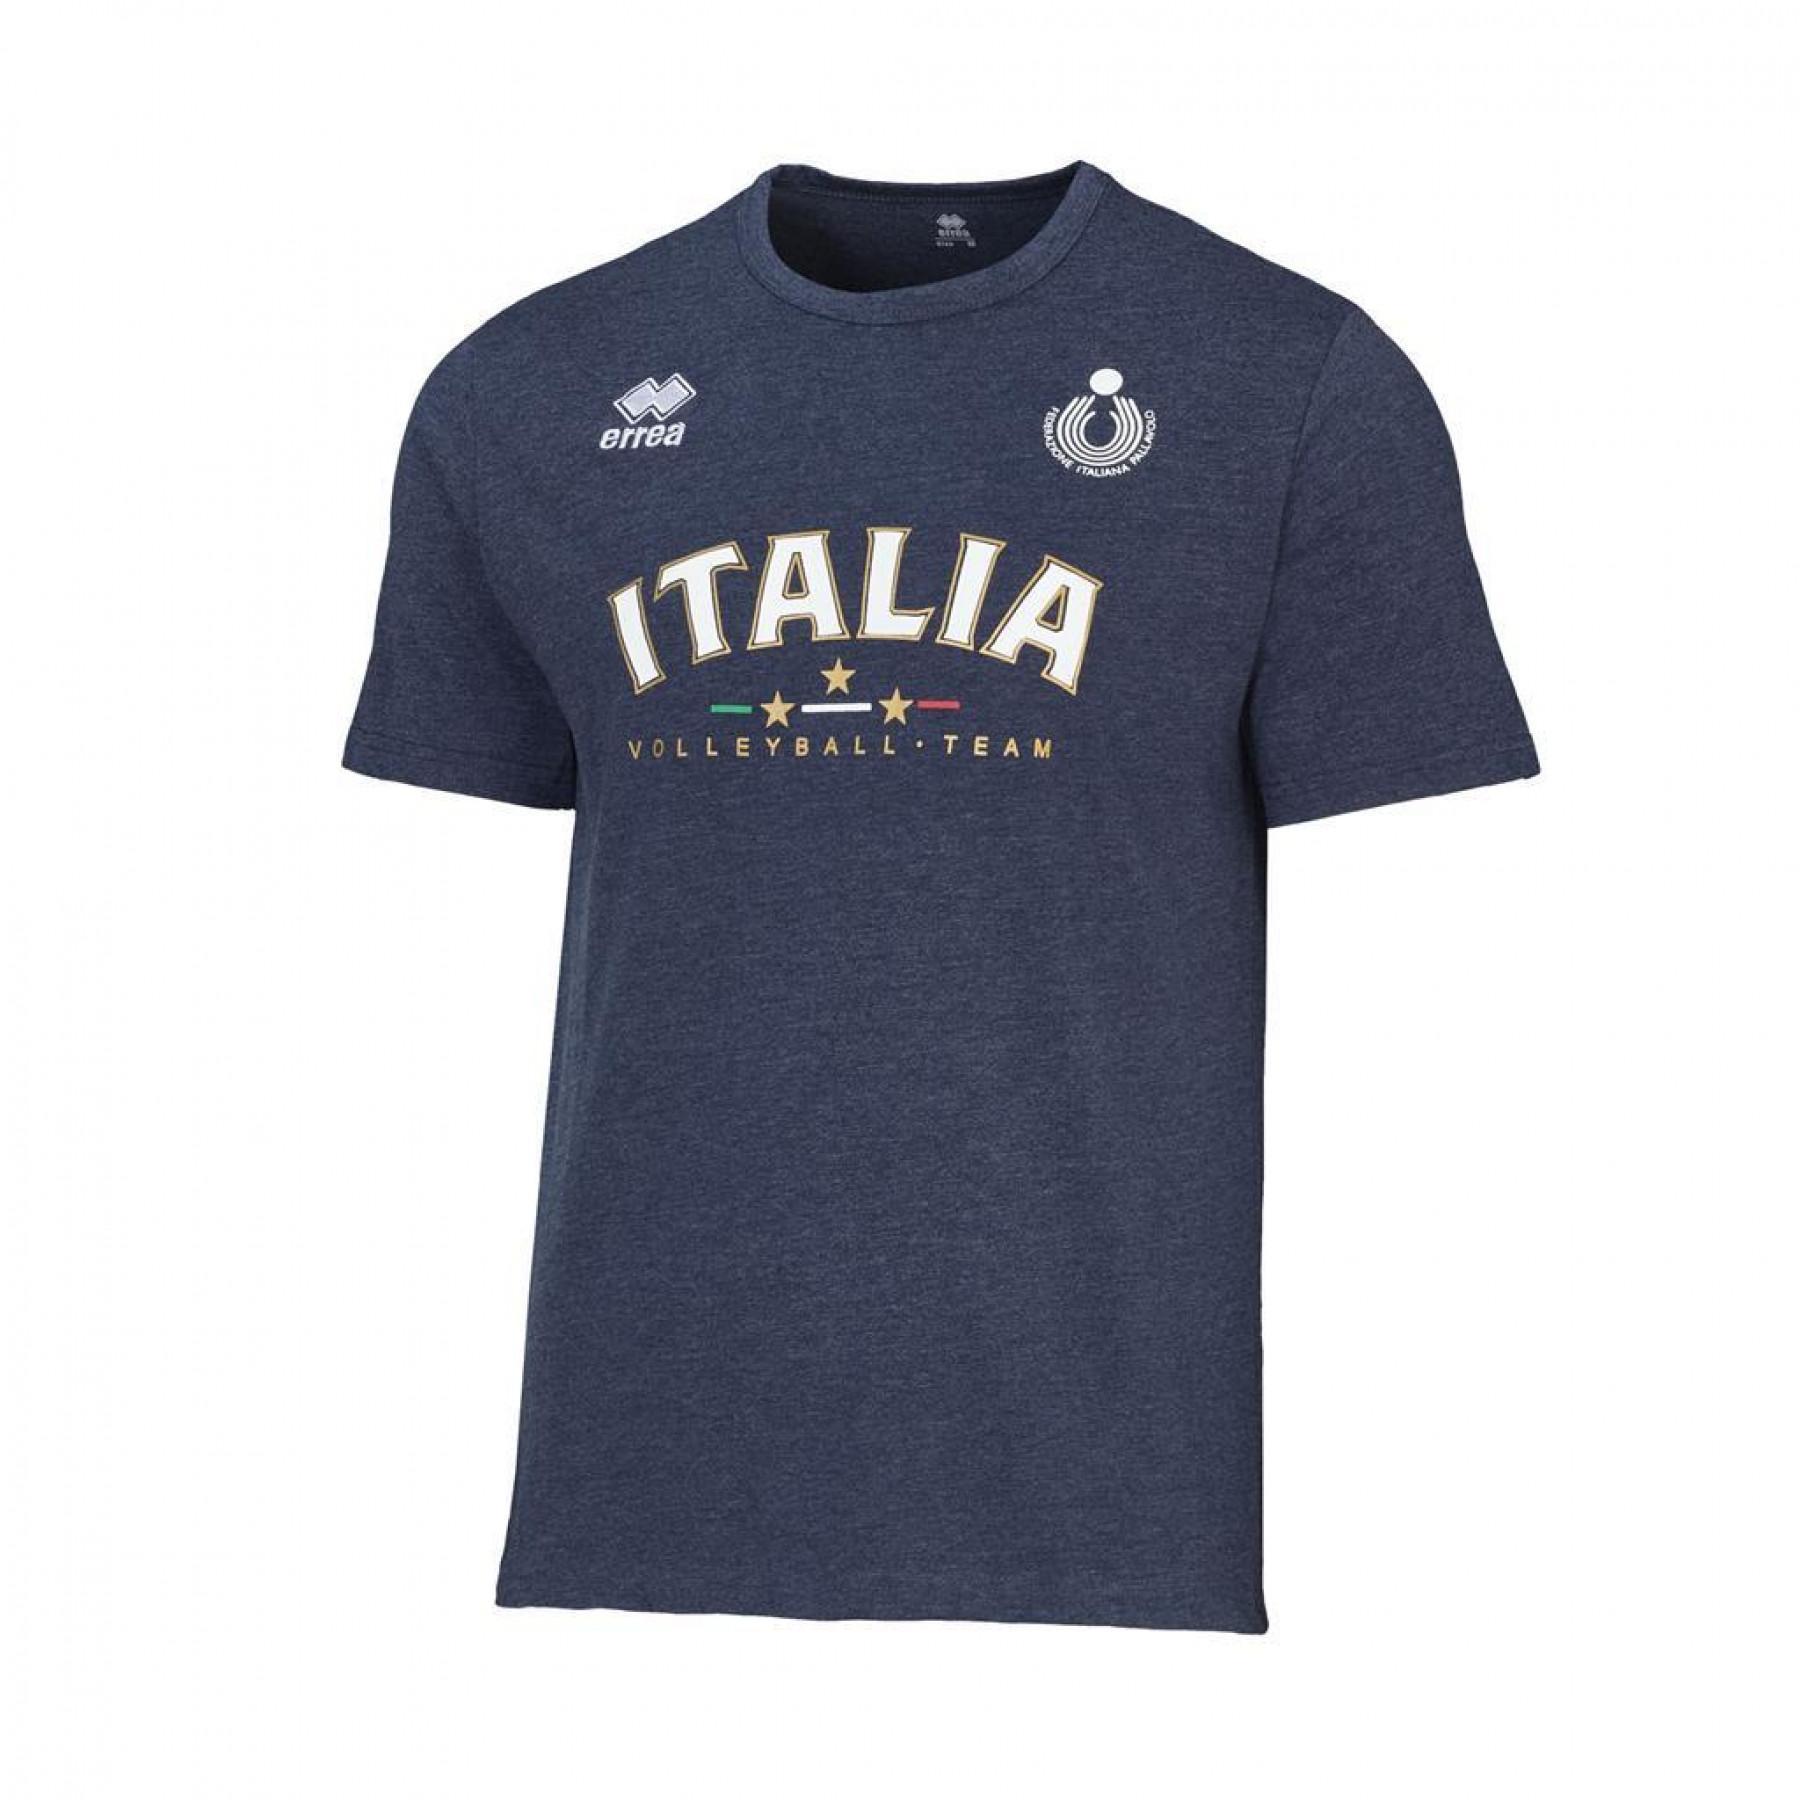 Volleyboll-T-shirt för barn Italie